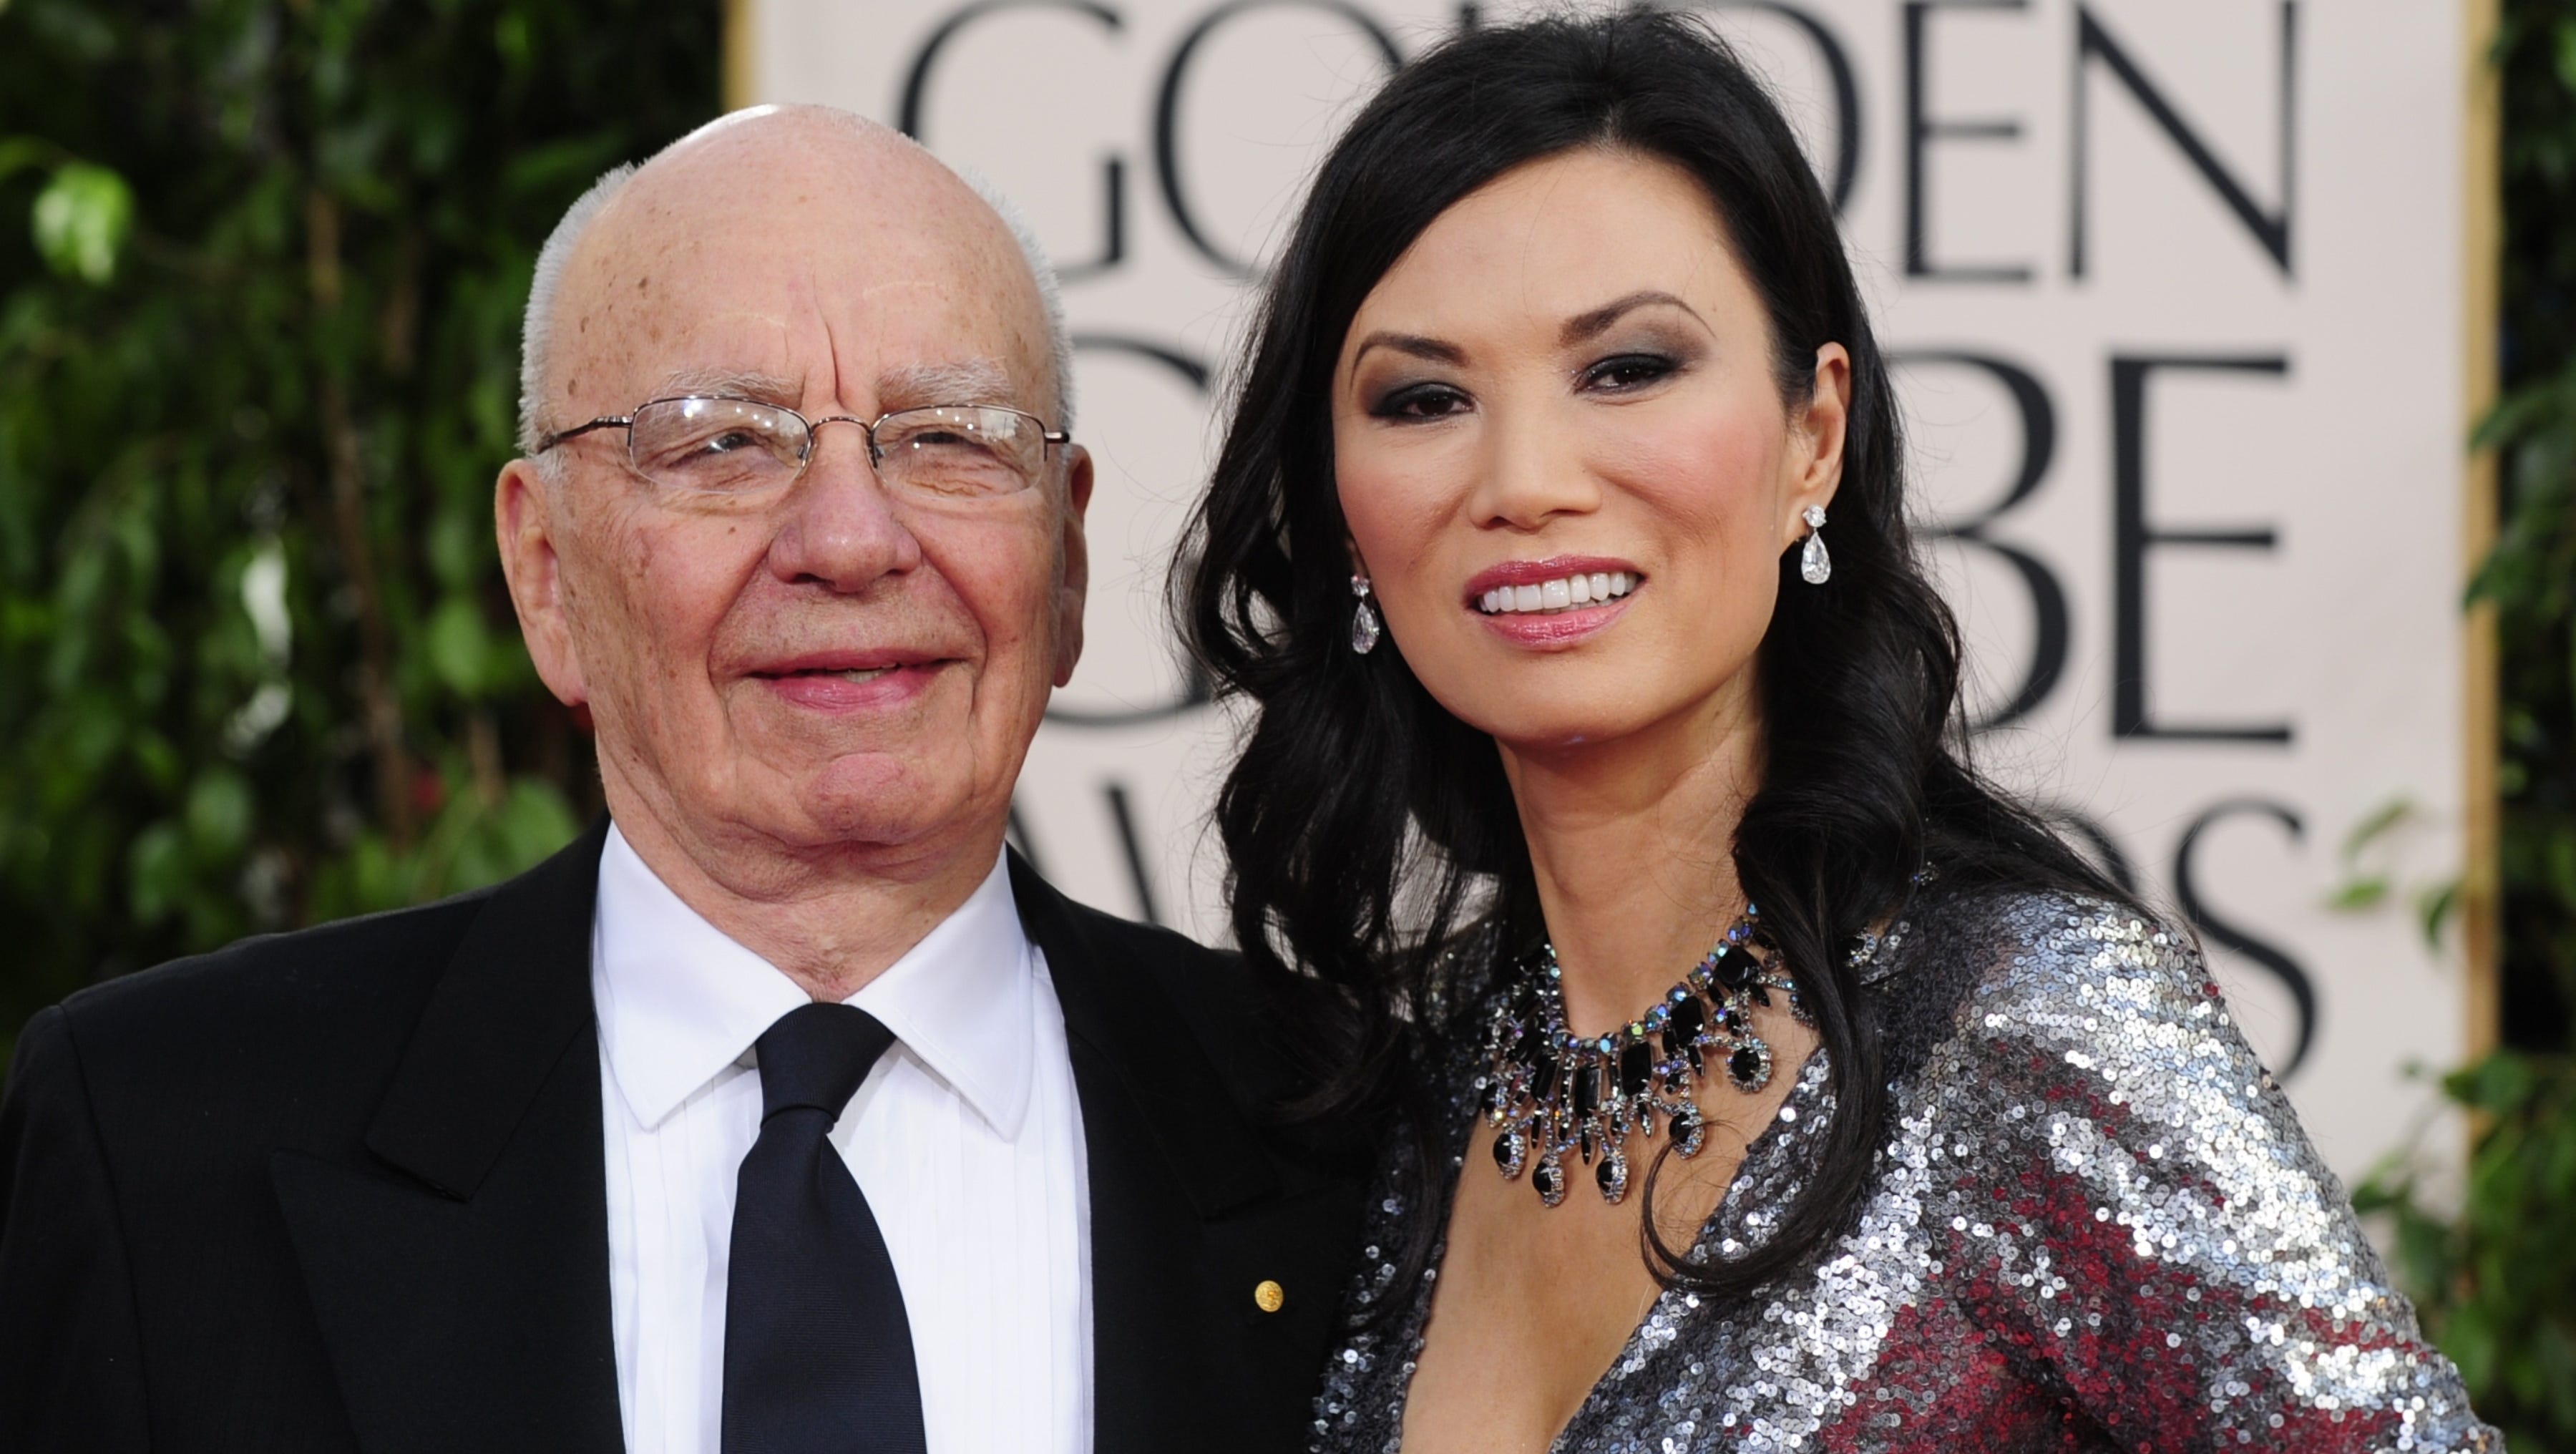 Rupert Murdoch files for divorce from Wendi Deng